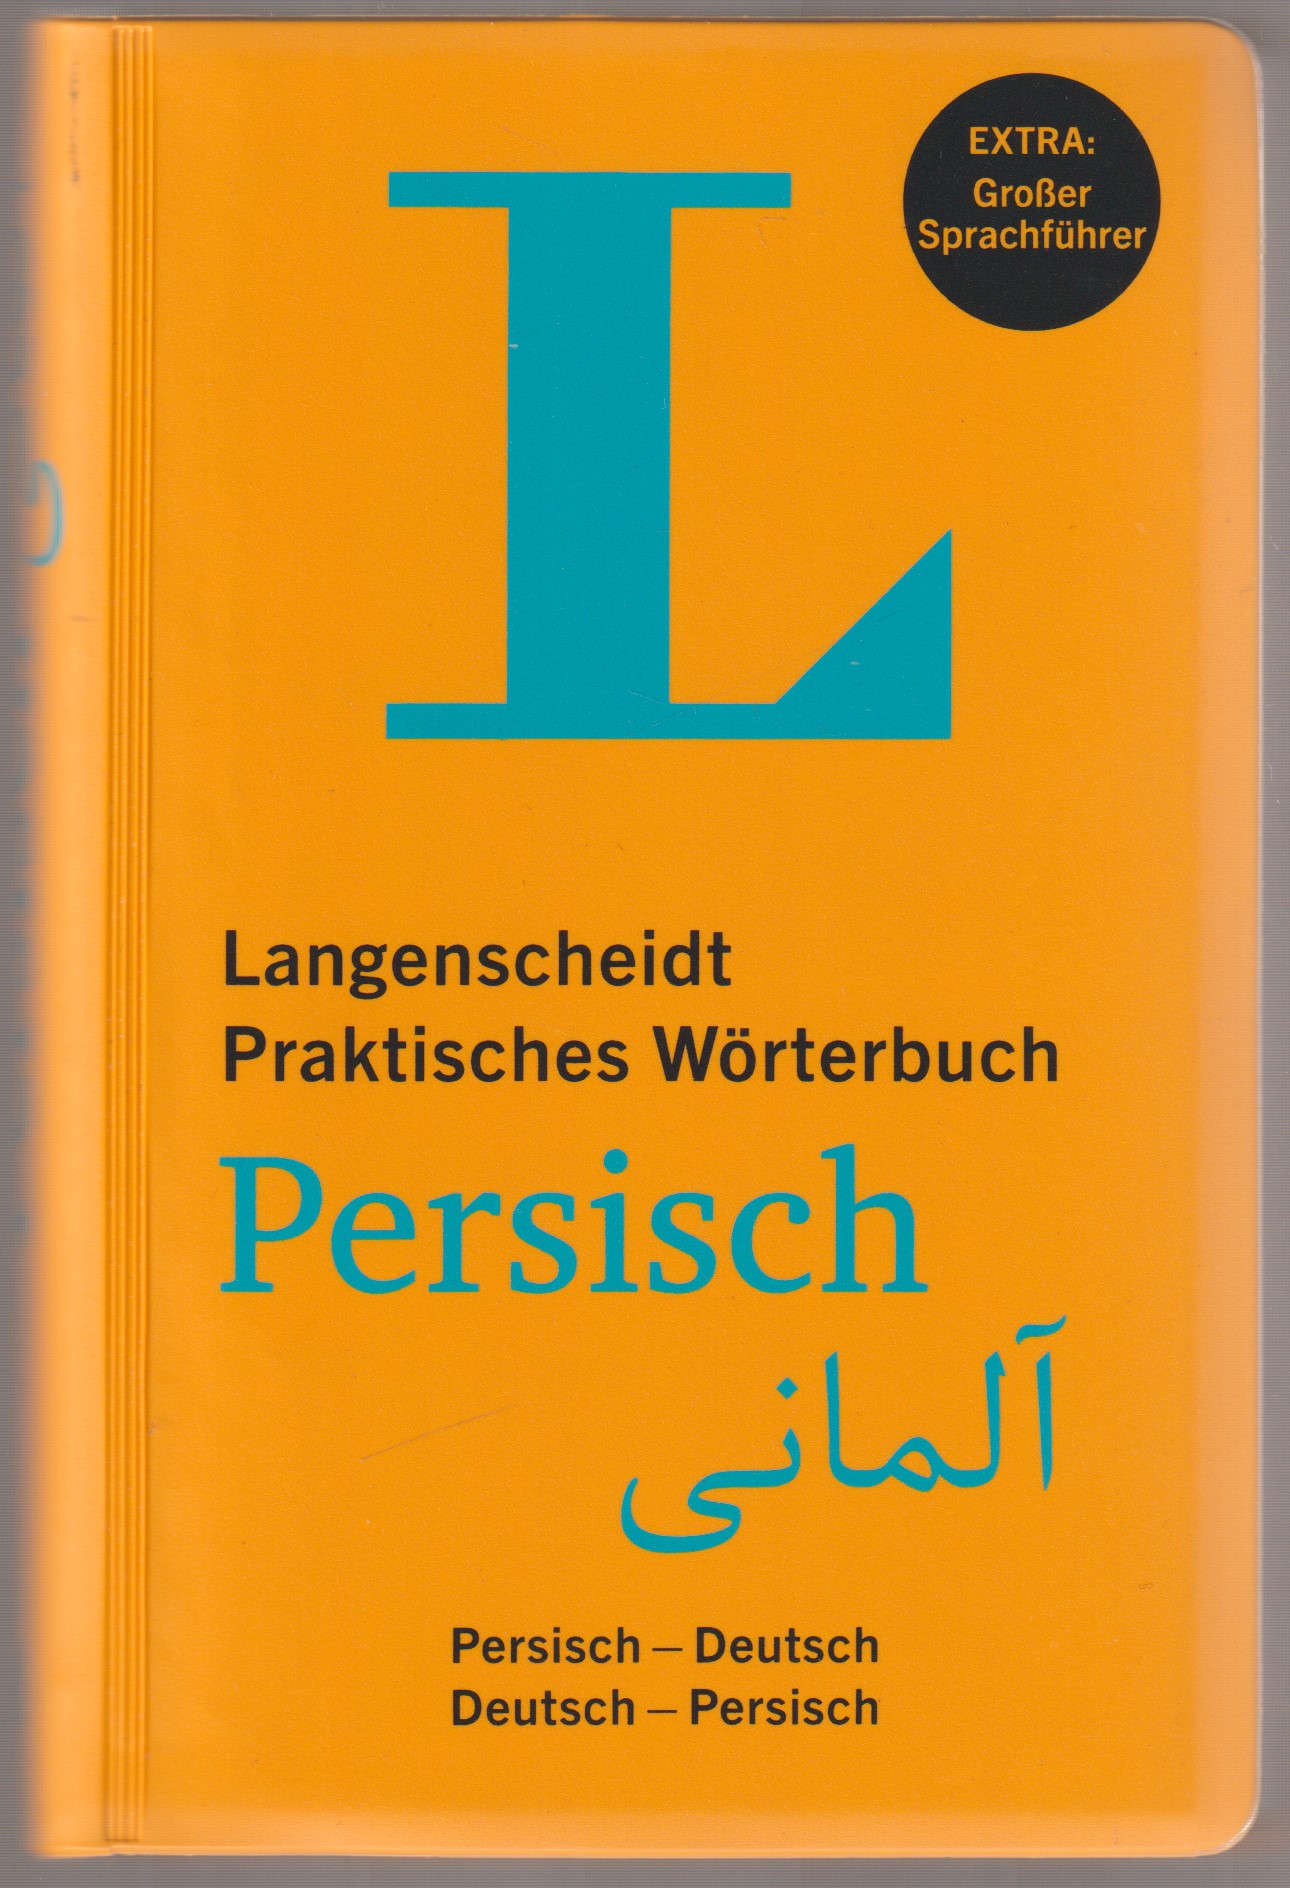 Langenscheidt Praktisches Worterbuch Persisch Persisch-Deutsch, Deutsch-Persisch.